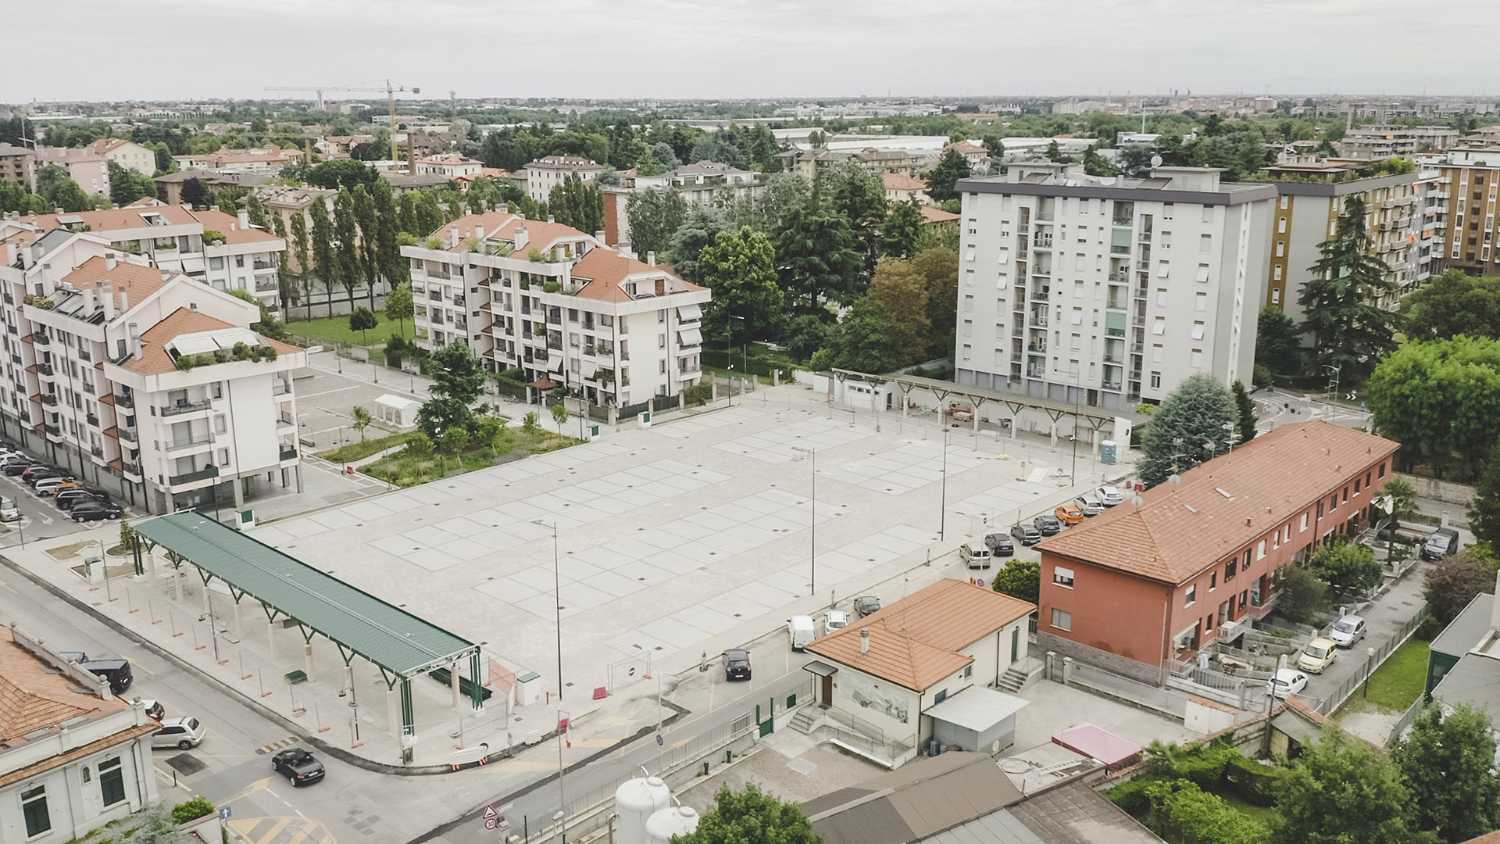 Piazza Europa di Villasanta. La nuova pavimentazione guida il processo di riqualificazione urbana